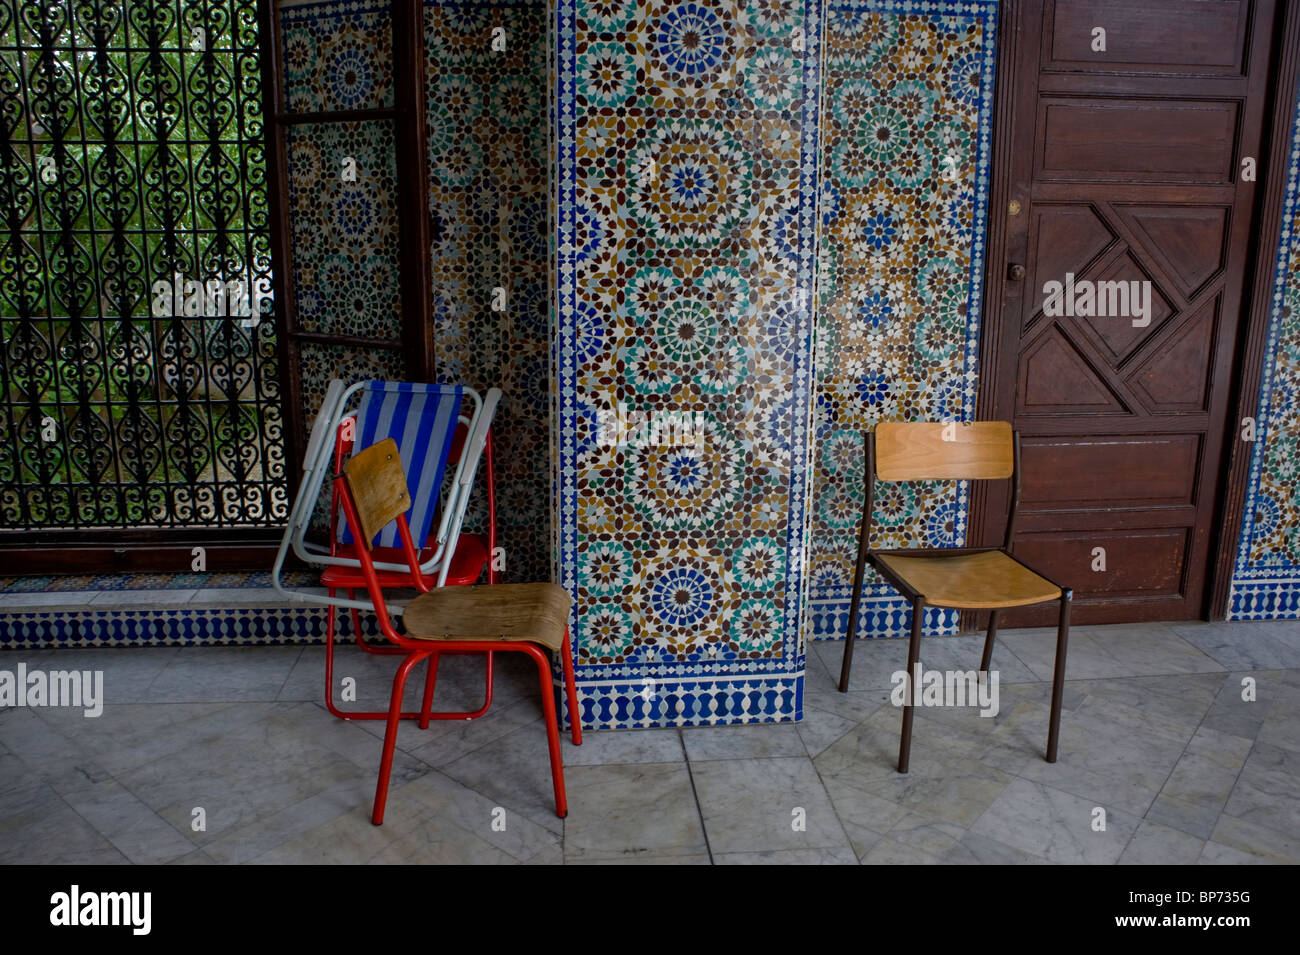 Paris, France, Religion, Grand Mosque, Building, Outside View Chairs, Empty Hallway, art islamique MOSQUÉE PARIS Stock Photo